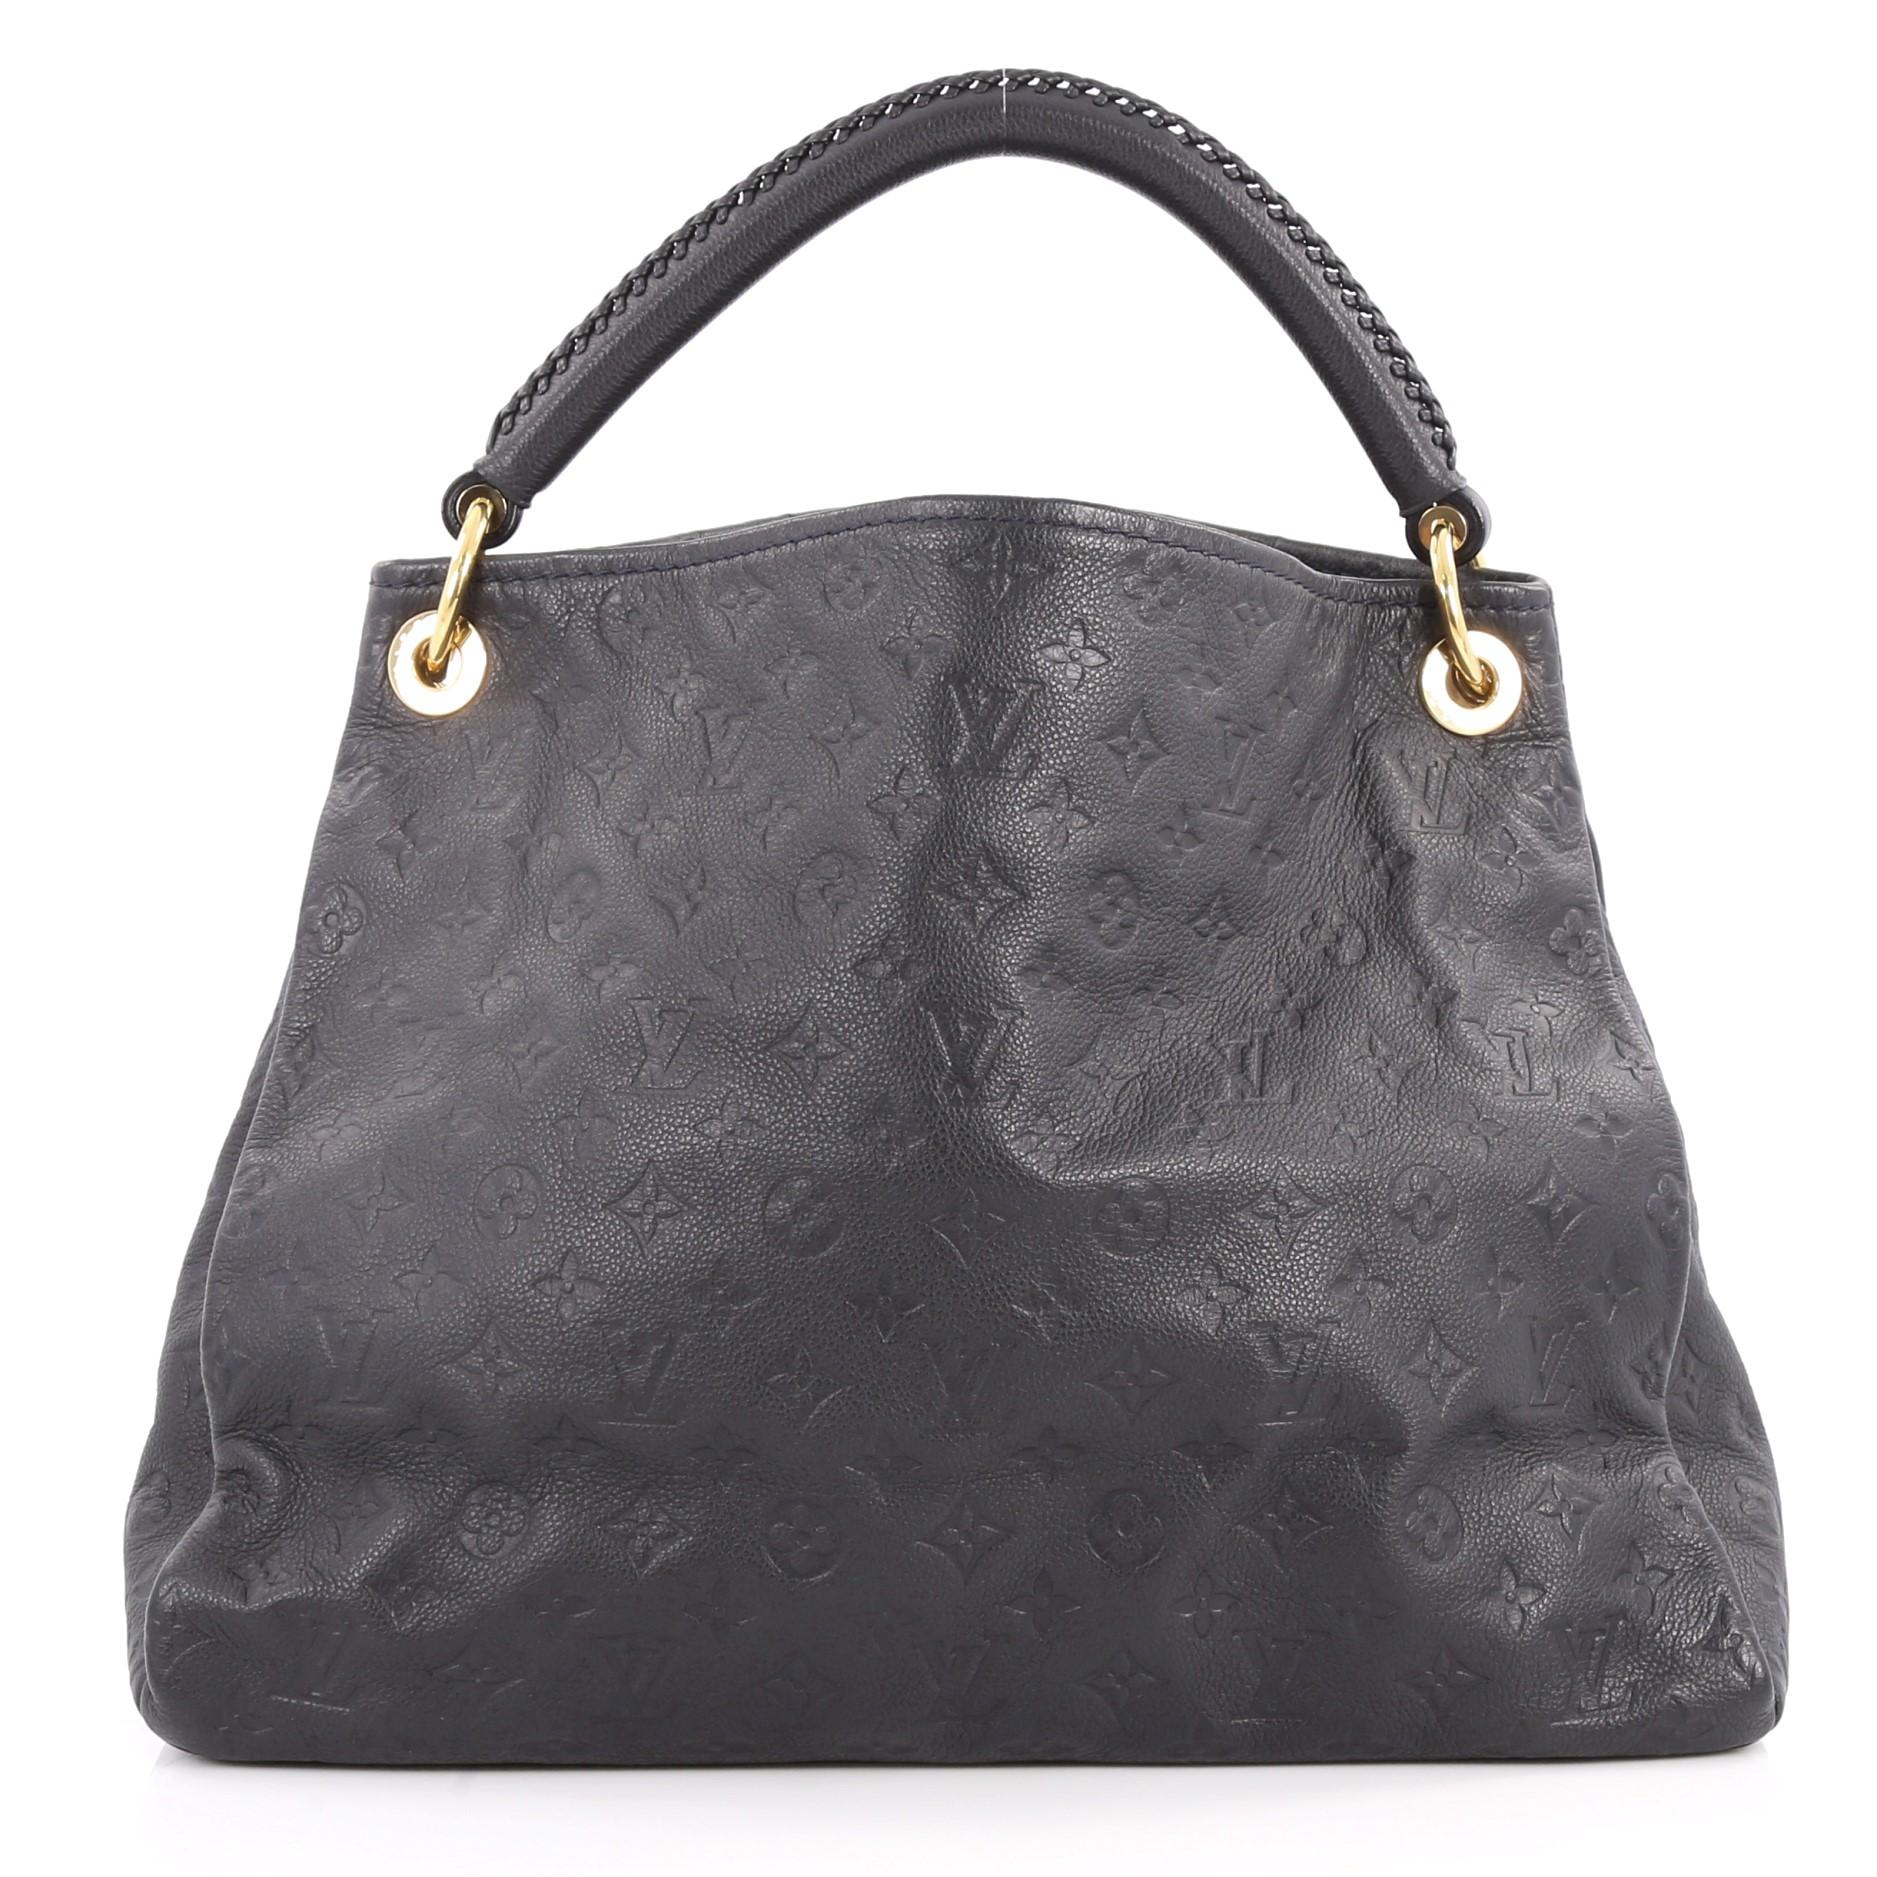  Louis Vuitton Artsy Handbag Monogram Empreinte Leather MM In Good Condition In NY, NY